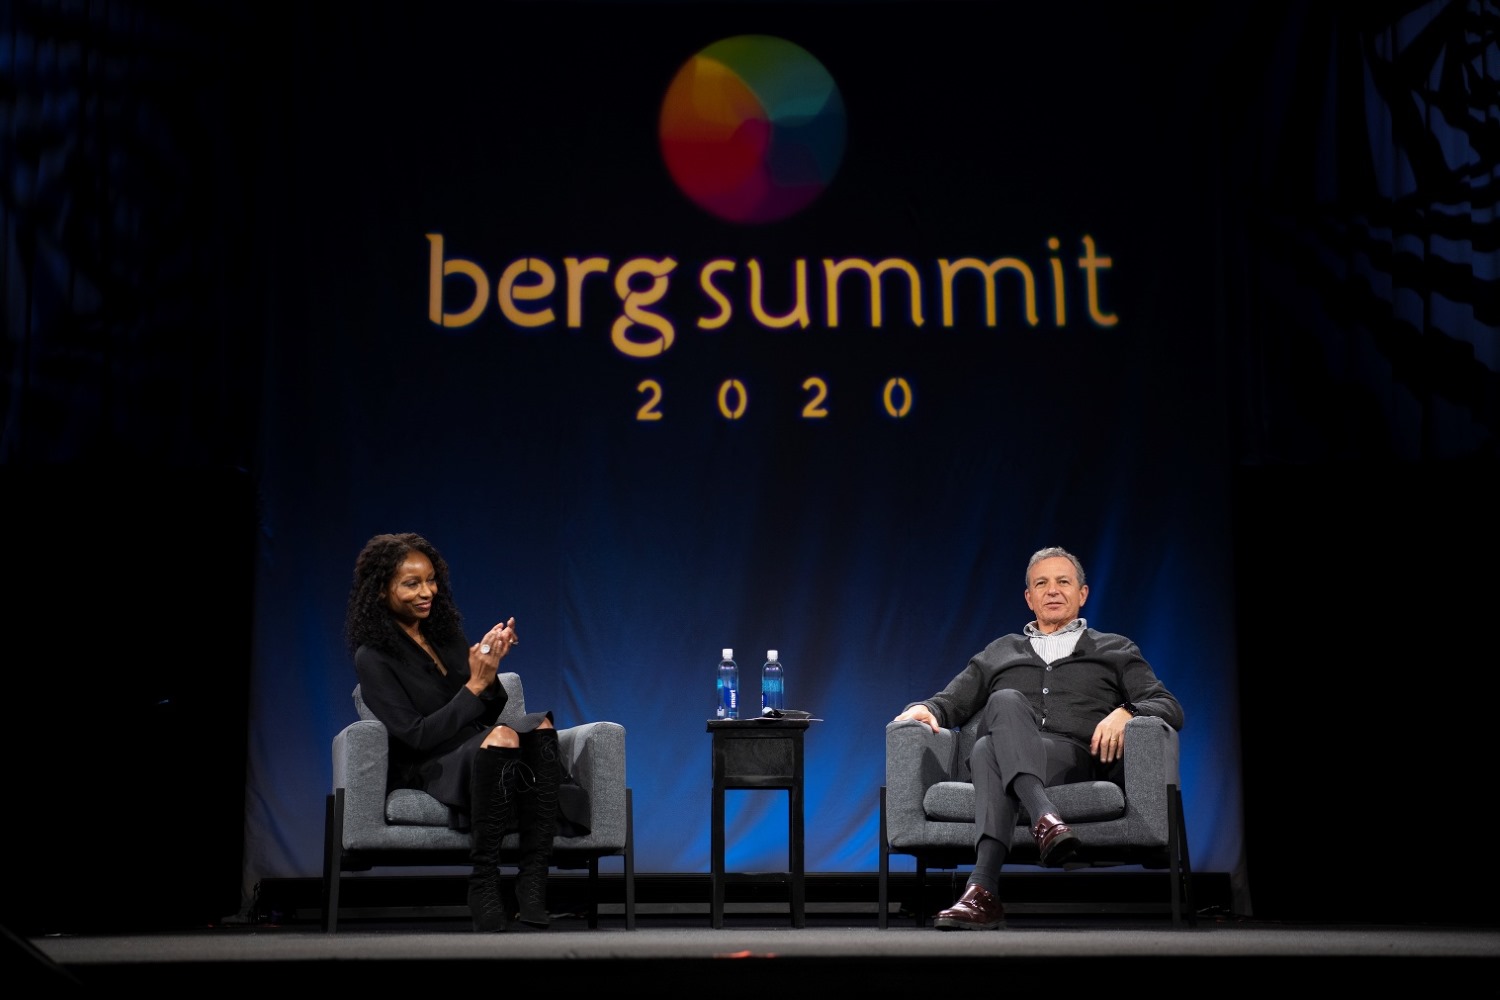 Bob Iger speaks at berg summit 2020